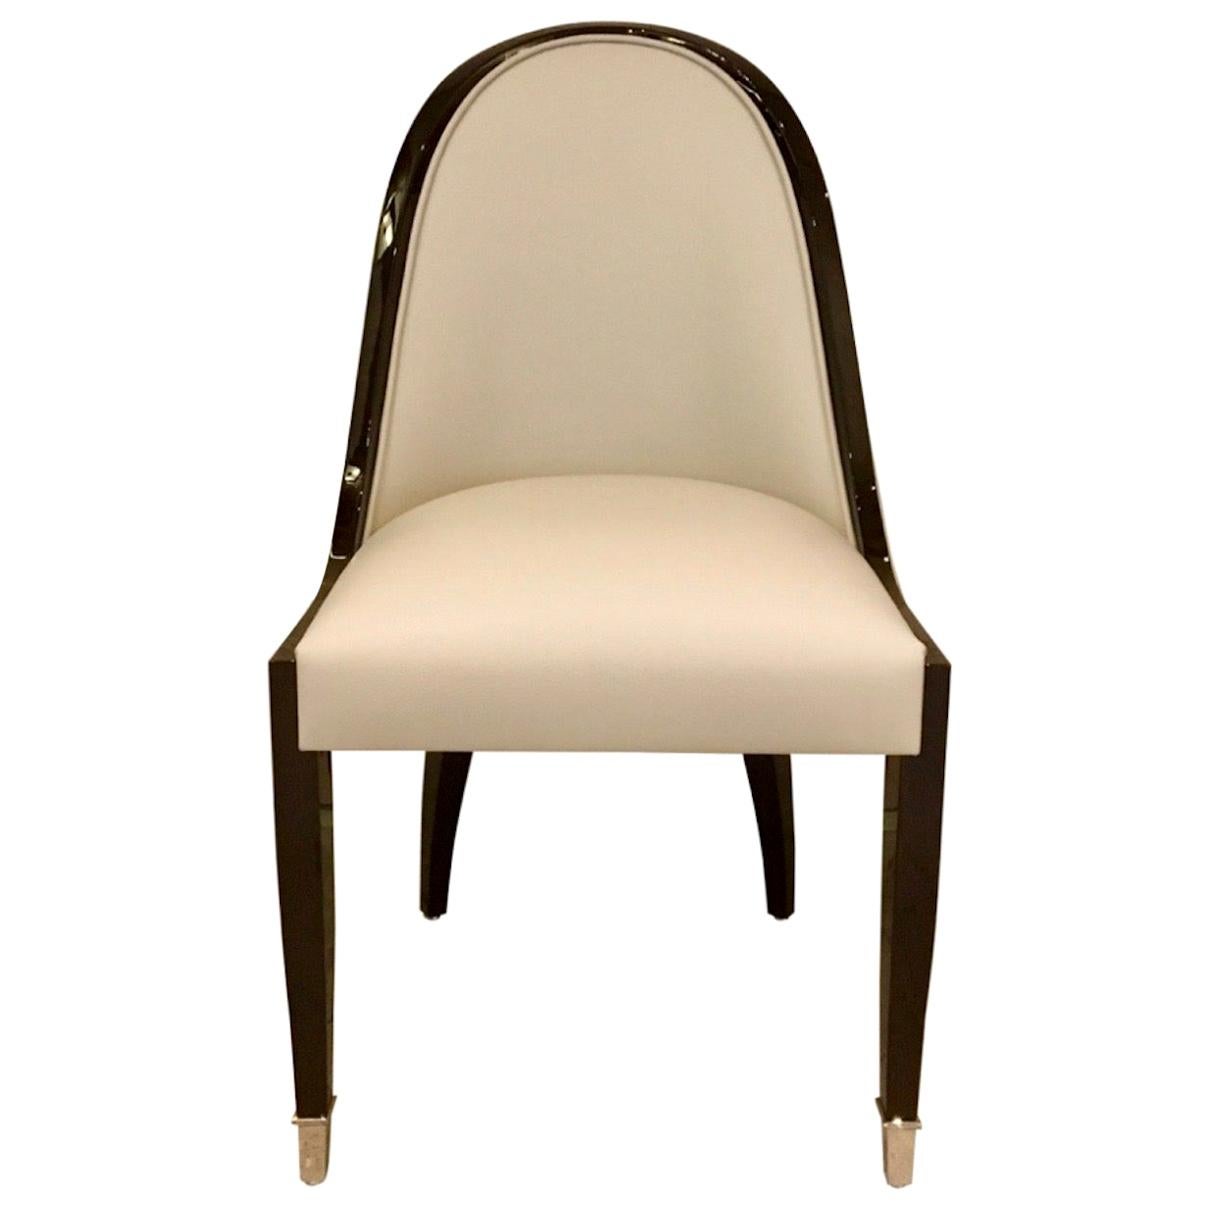 Stuhl mit schmal geschwungener Rückenlehne im Art-Déco-Stil mit Leder und Holz